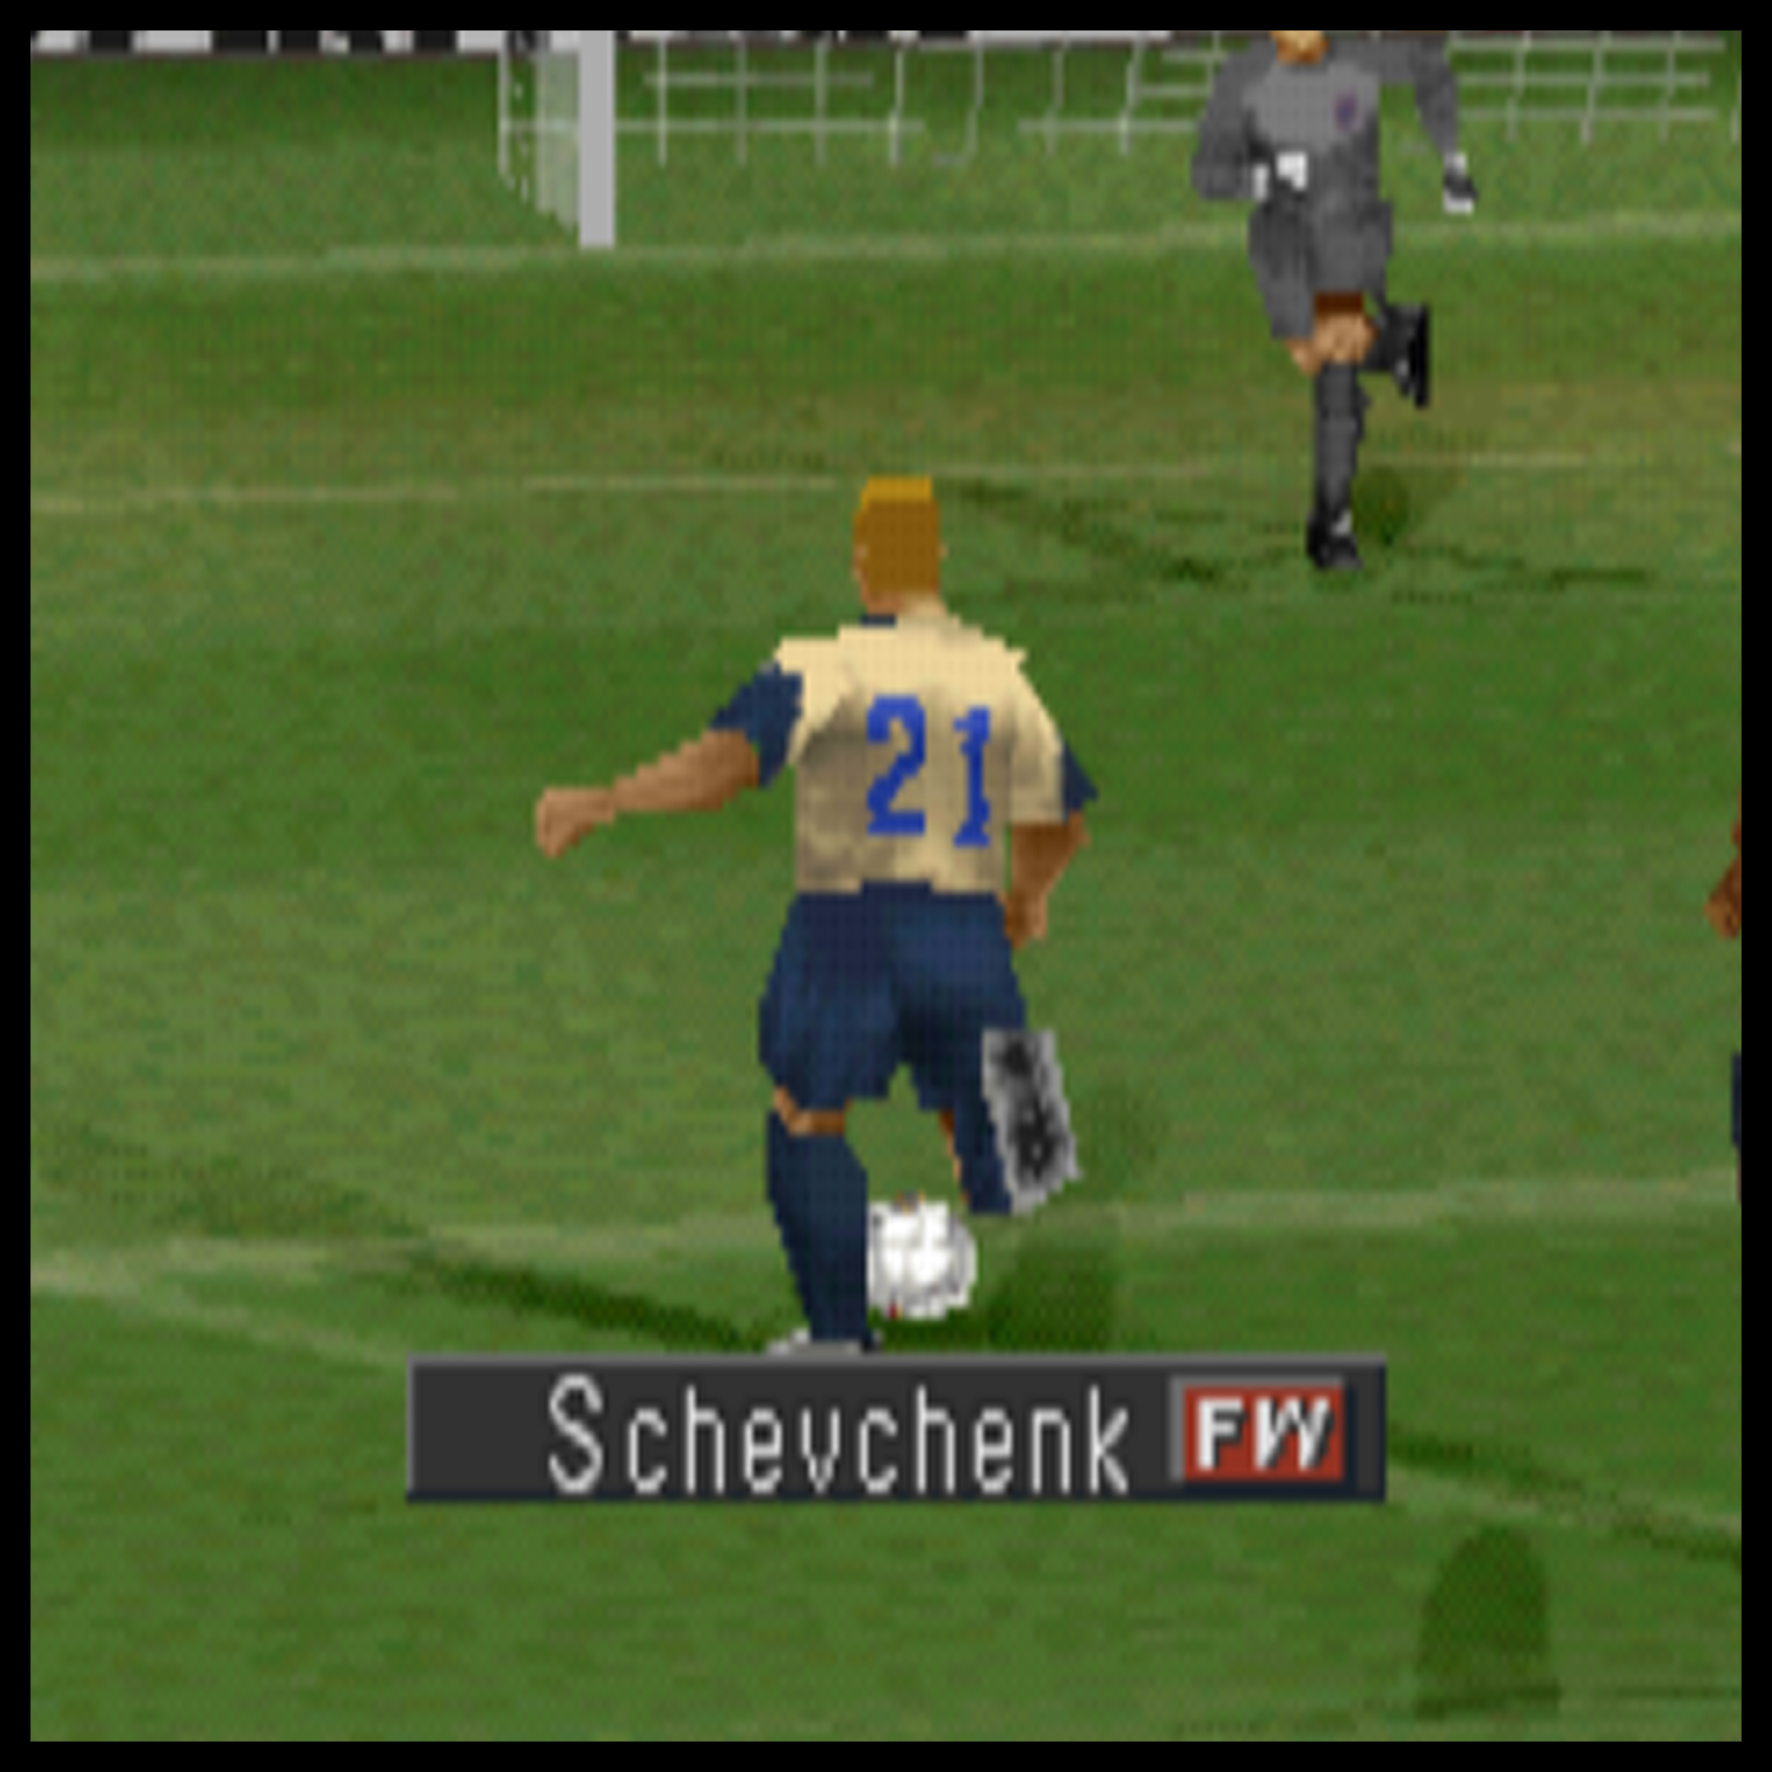 O mito de Shevchenko não se restringiu apenas aos gramados. No mundo virtual, o atacante ainda causa estragos em partidas do Winning Eleven.